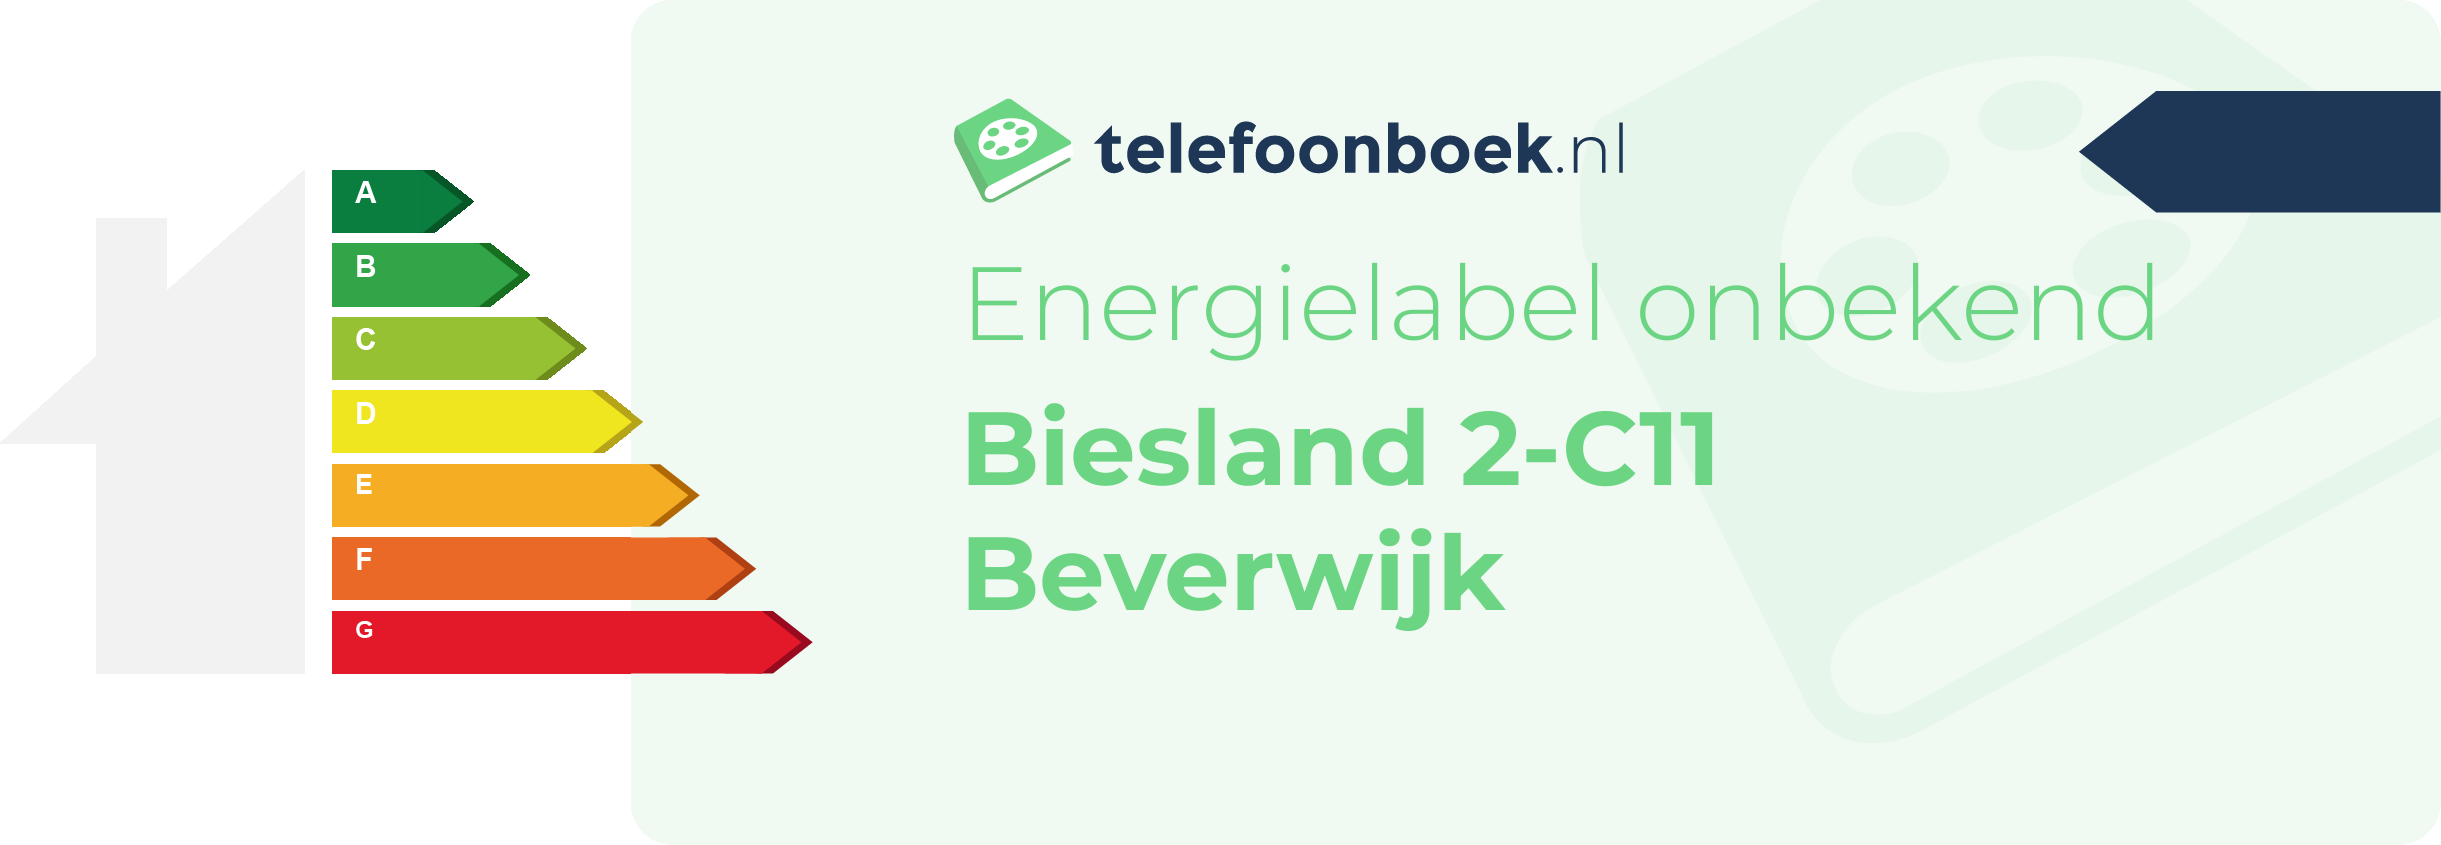 Energielabel Biesland 2-C11 Beverwijk